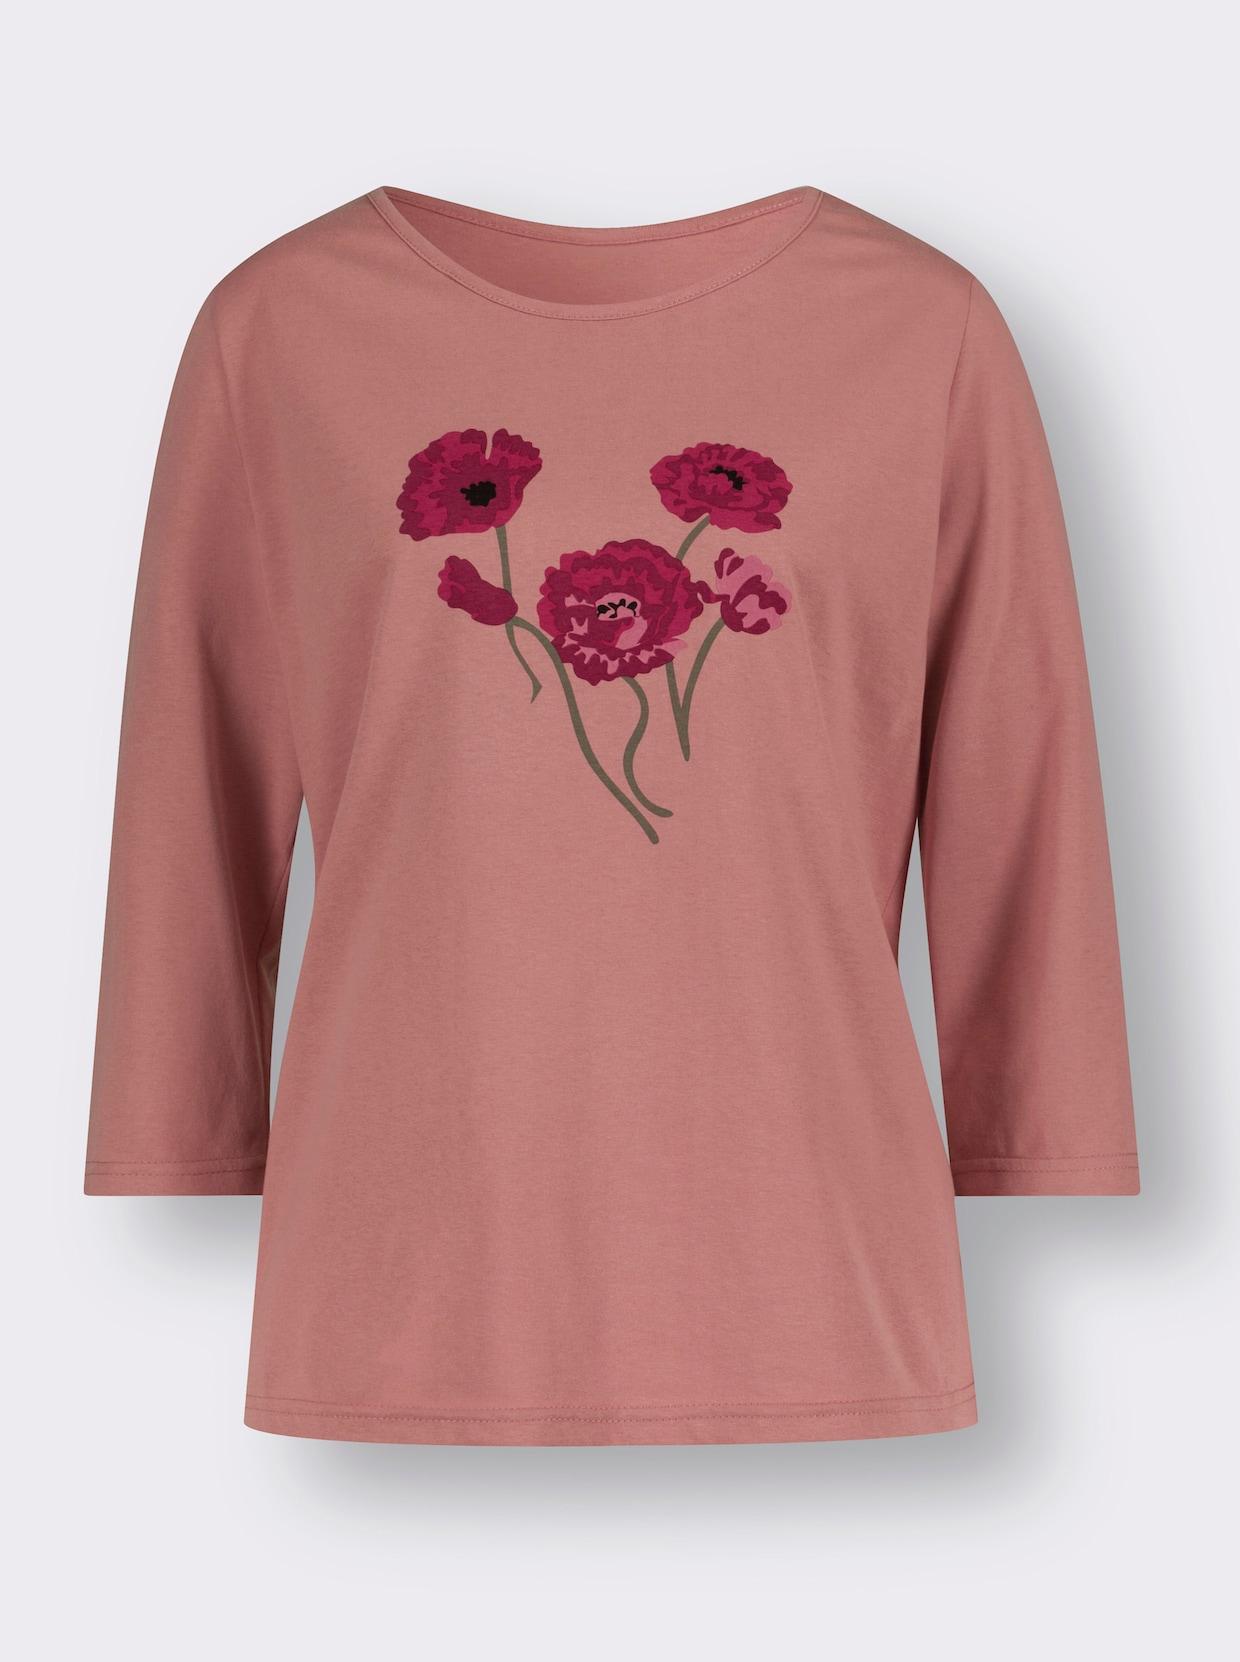 Tričko s okrúhlym výstrihom - ružové drevo-jahodová